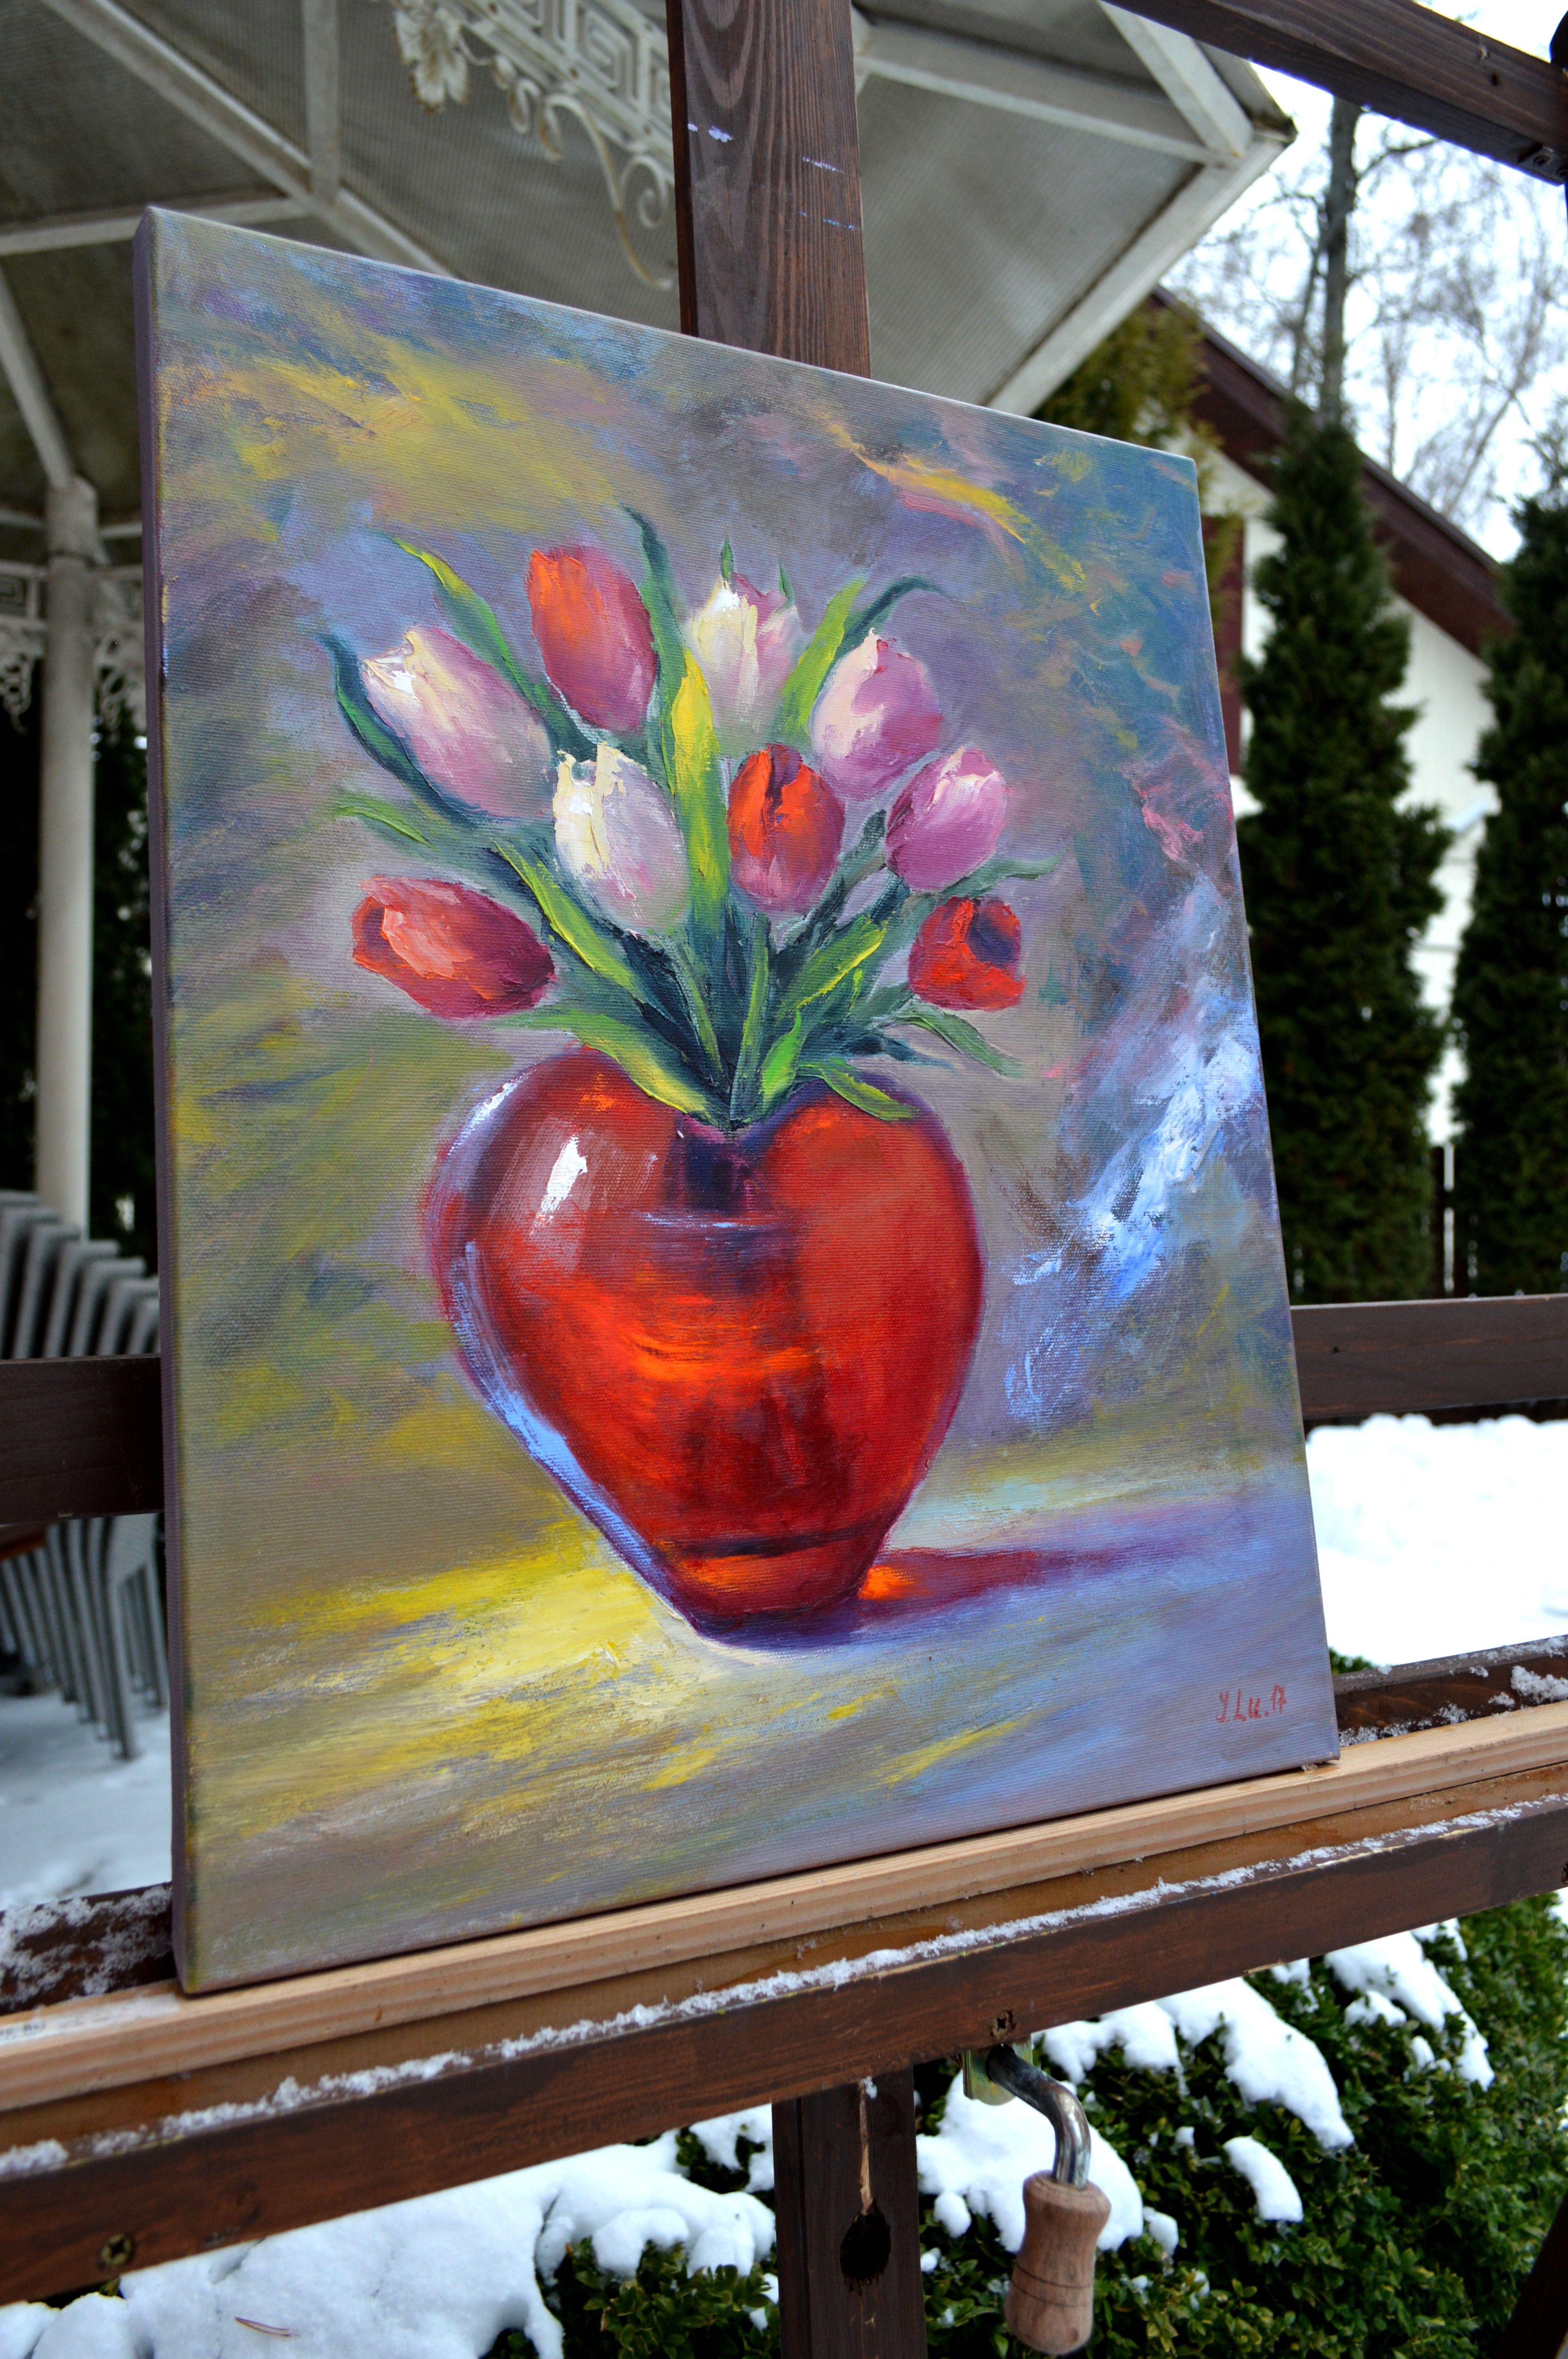 Dans cette peinture à l'huile fervente, j'ai canalisé l'éclat de la passion et la tendresse de l'affection à travers un bouquet de tulipes luxuriantes bercées dans un vase rouge étincelant. Les traits expressifs et les teintes vives incarnent un